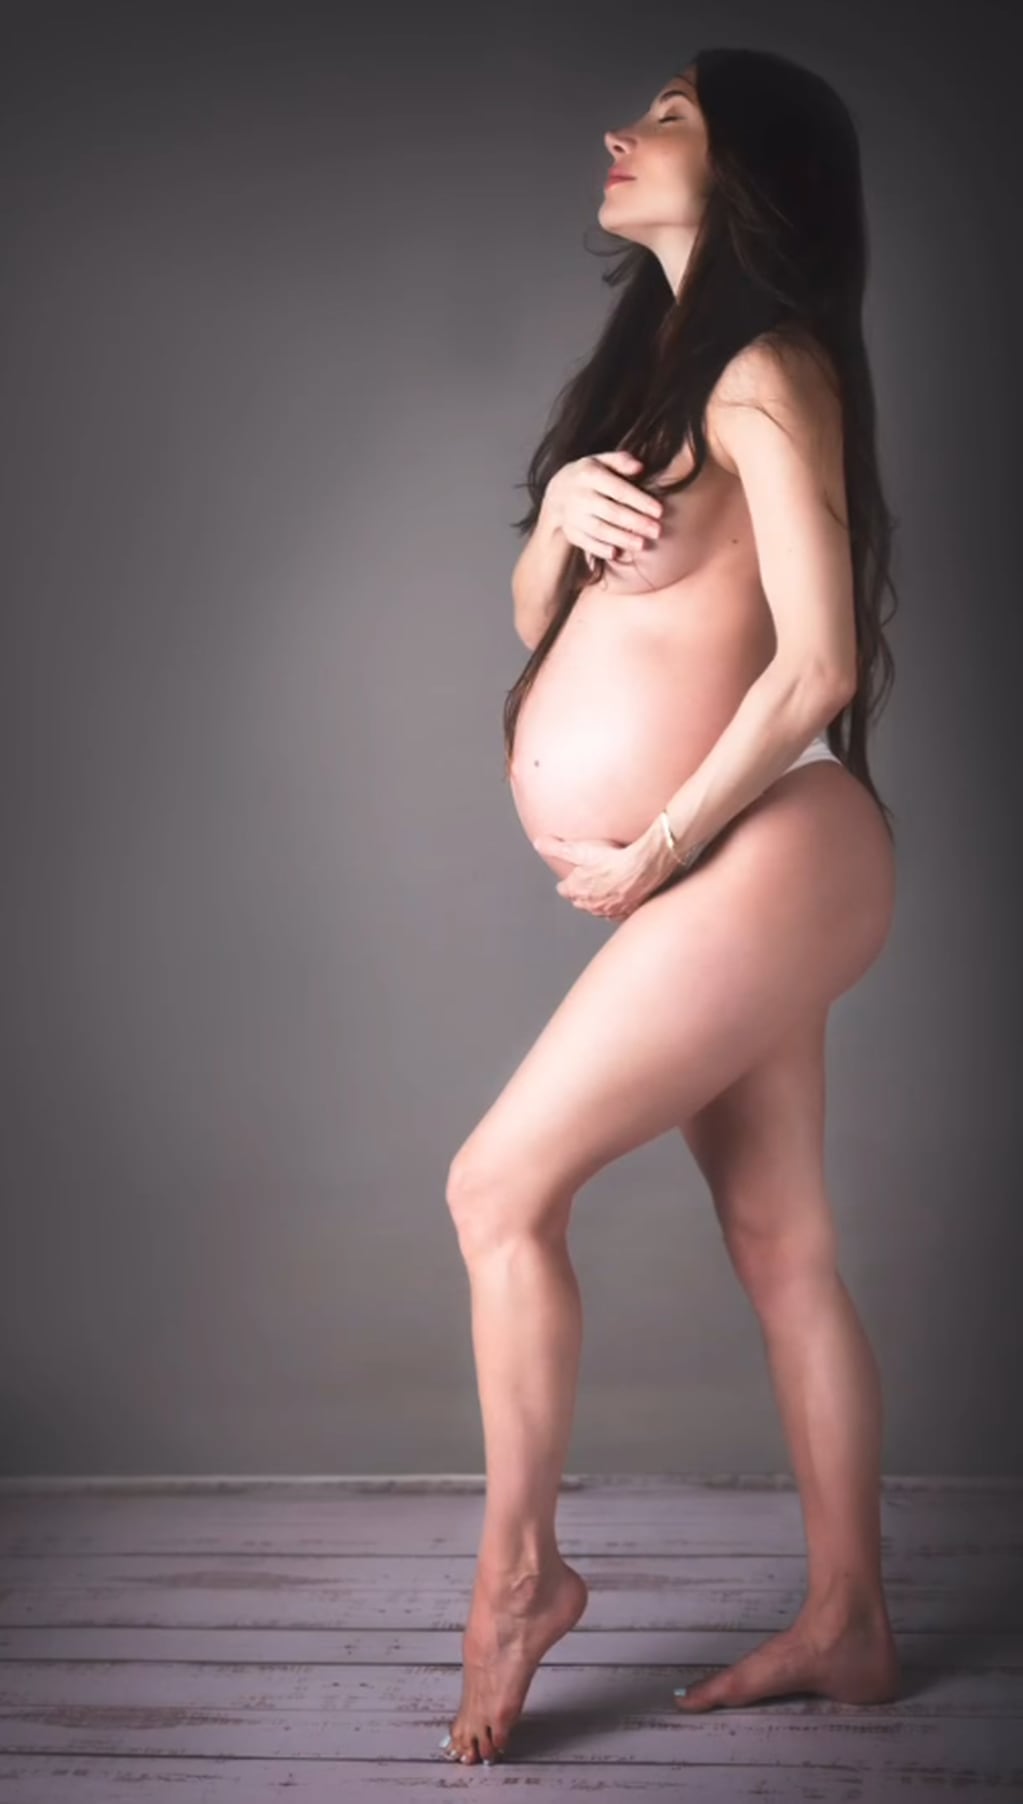 Magui Bravi posó en topless con 35 semanas de embarazo: "Mi mejor momento"